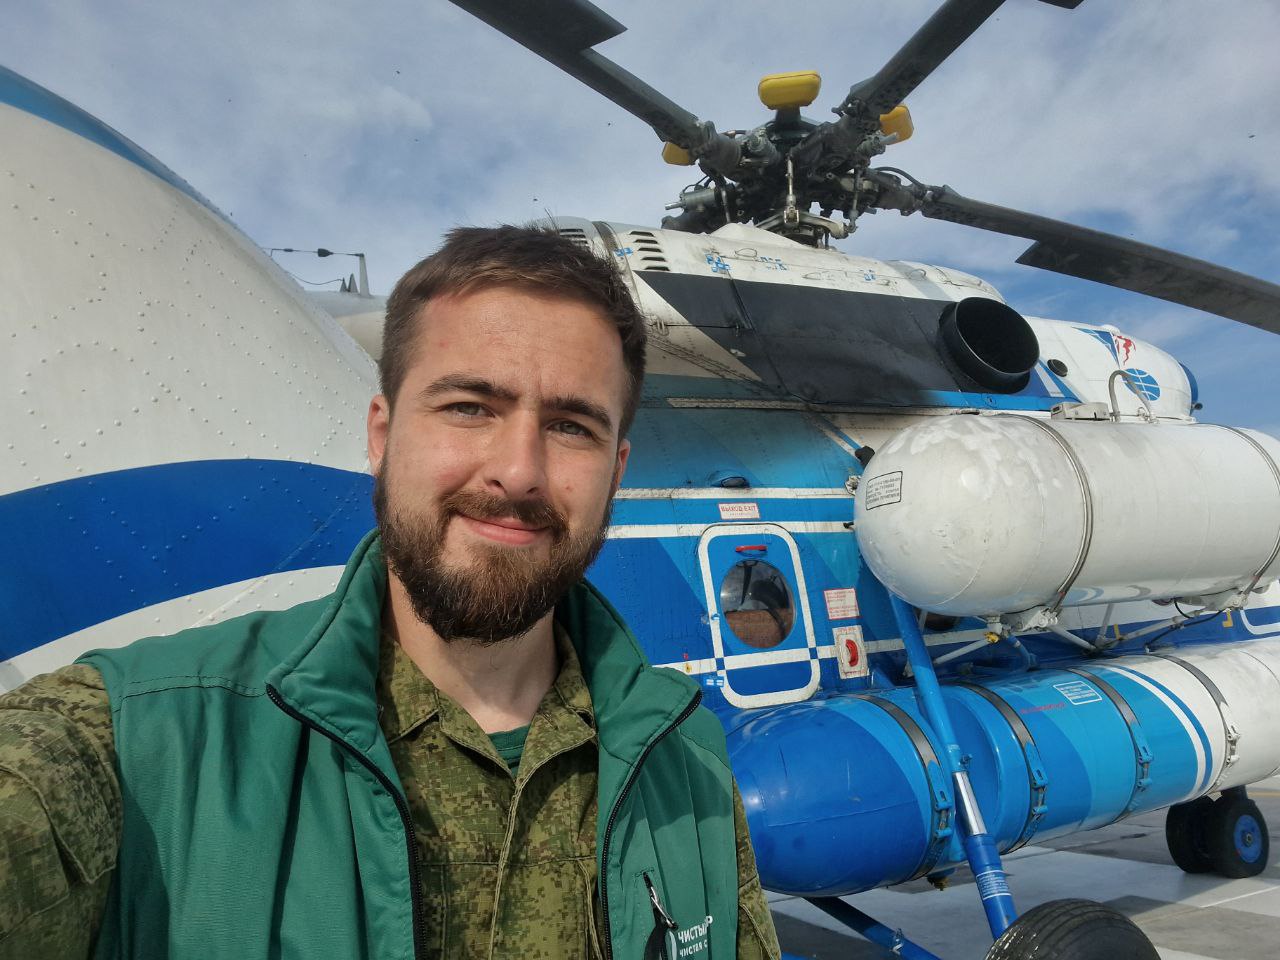 Студент ТГУ вместе с 13 волонтёрами очистил 3,5 га территории в Арктике